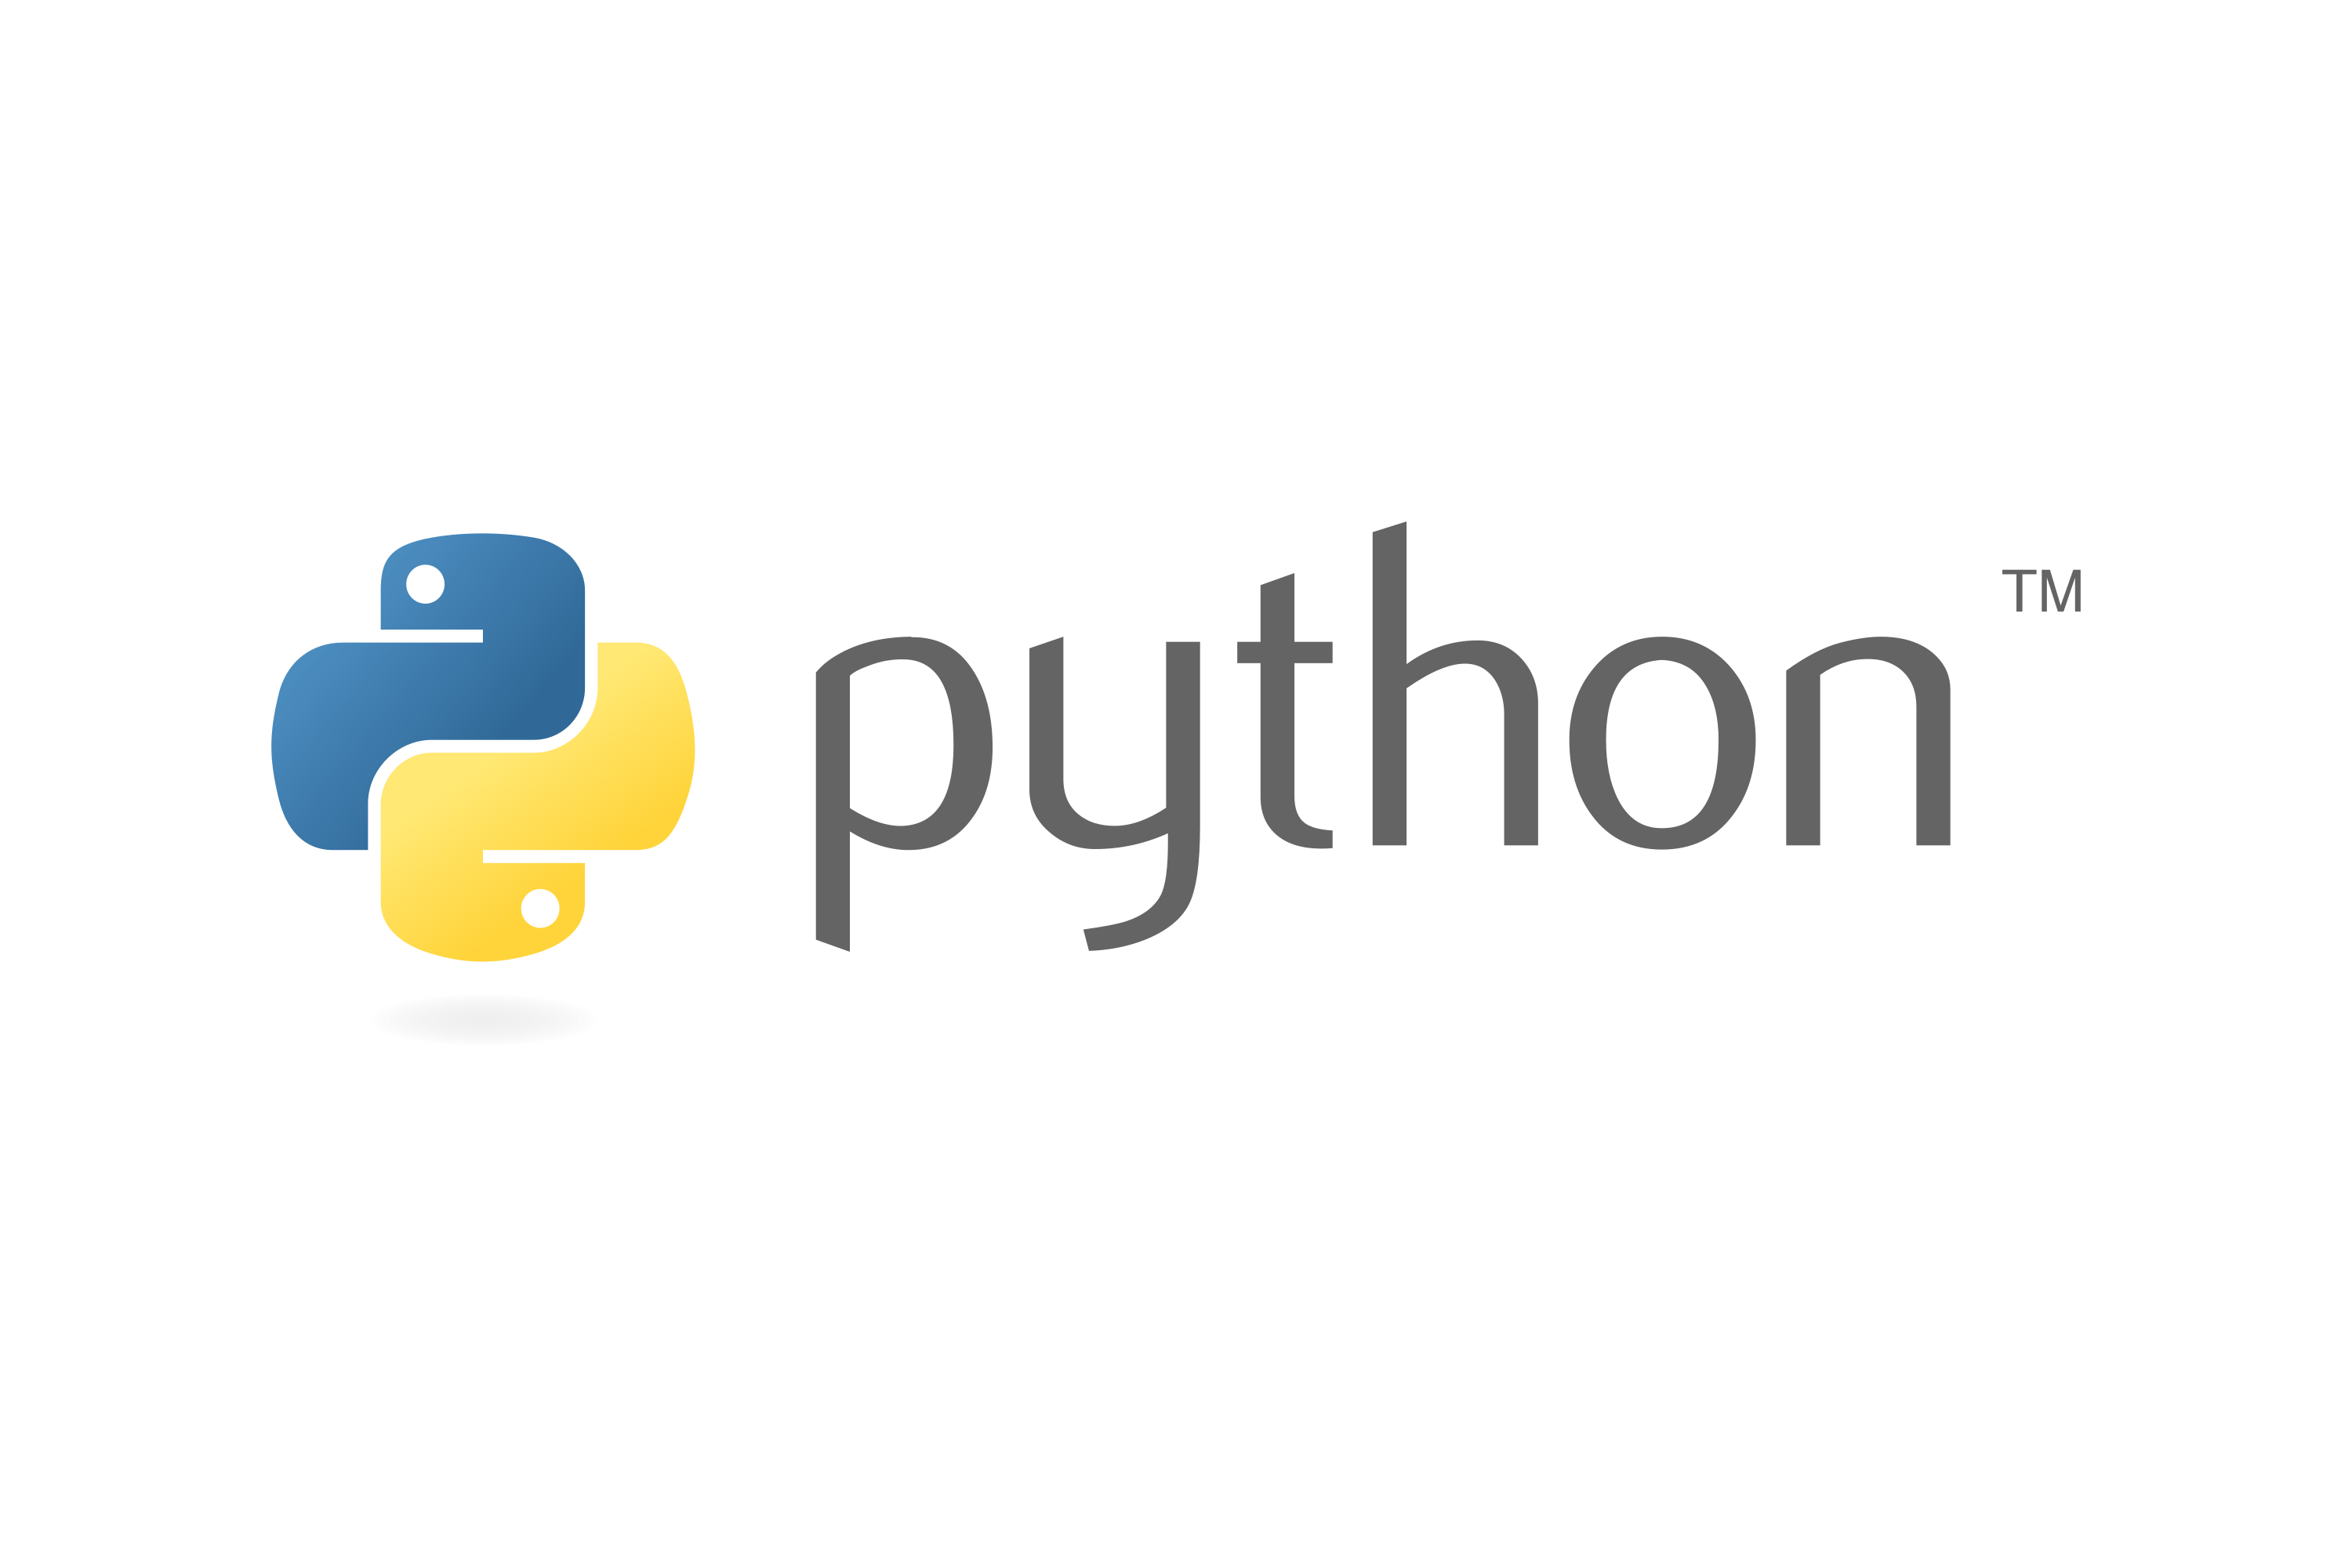 Download Python Logo in SVG Vector or PNG File Format - Logo ...